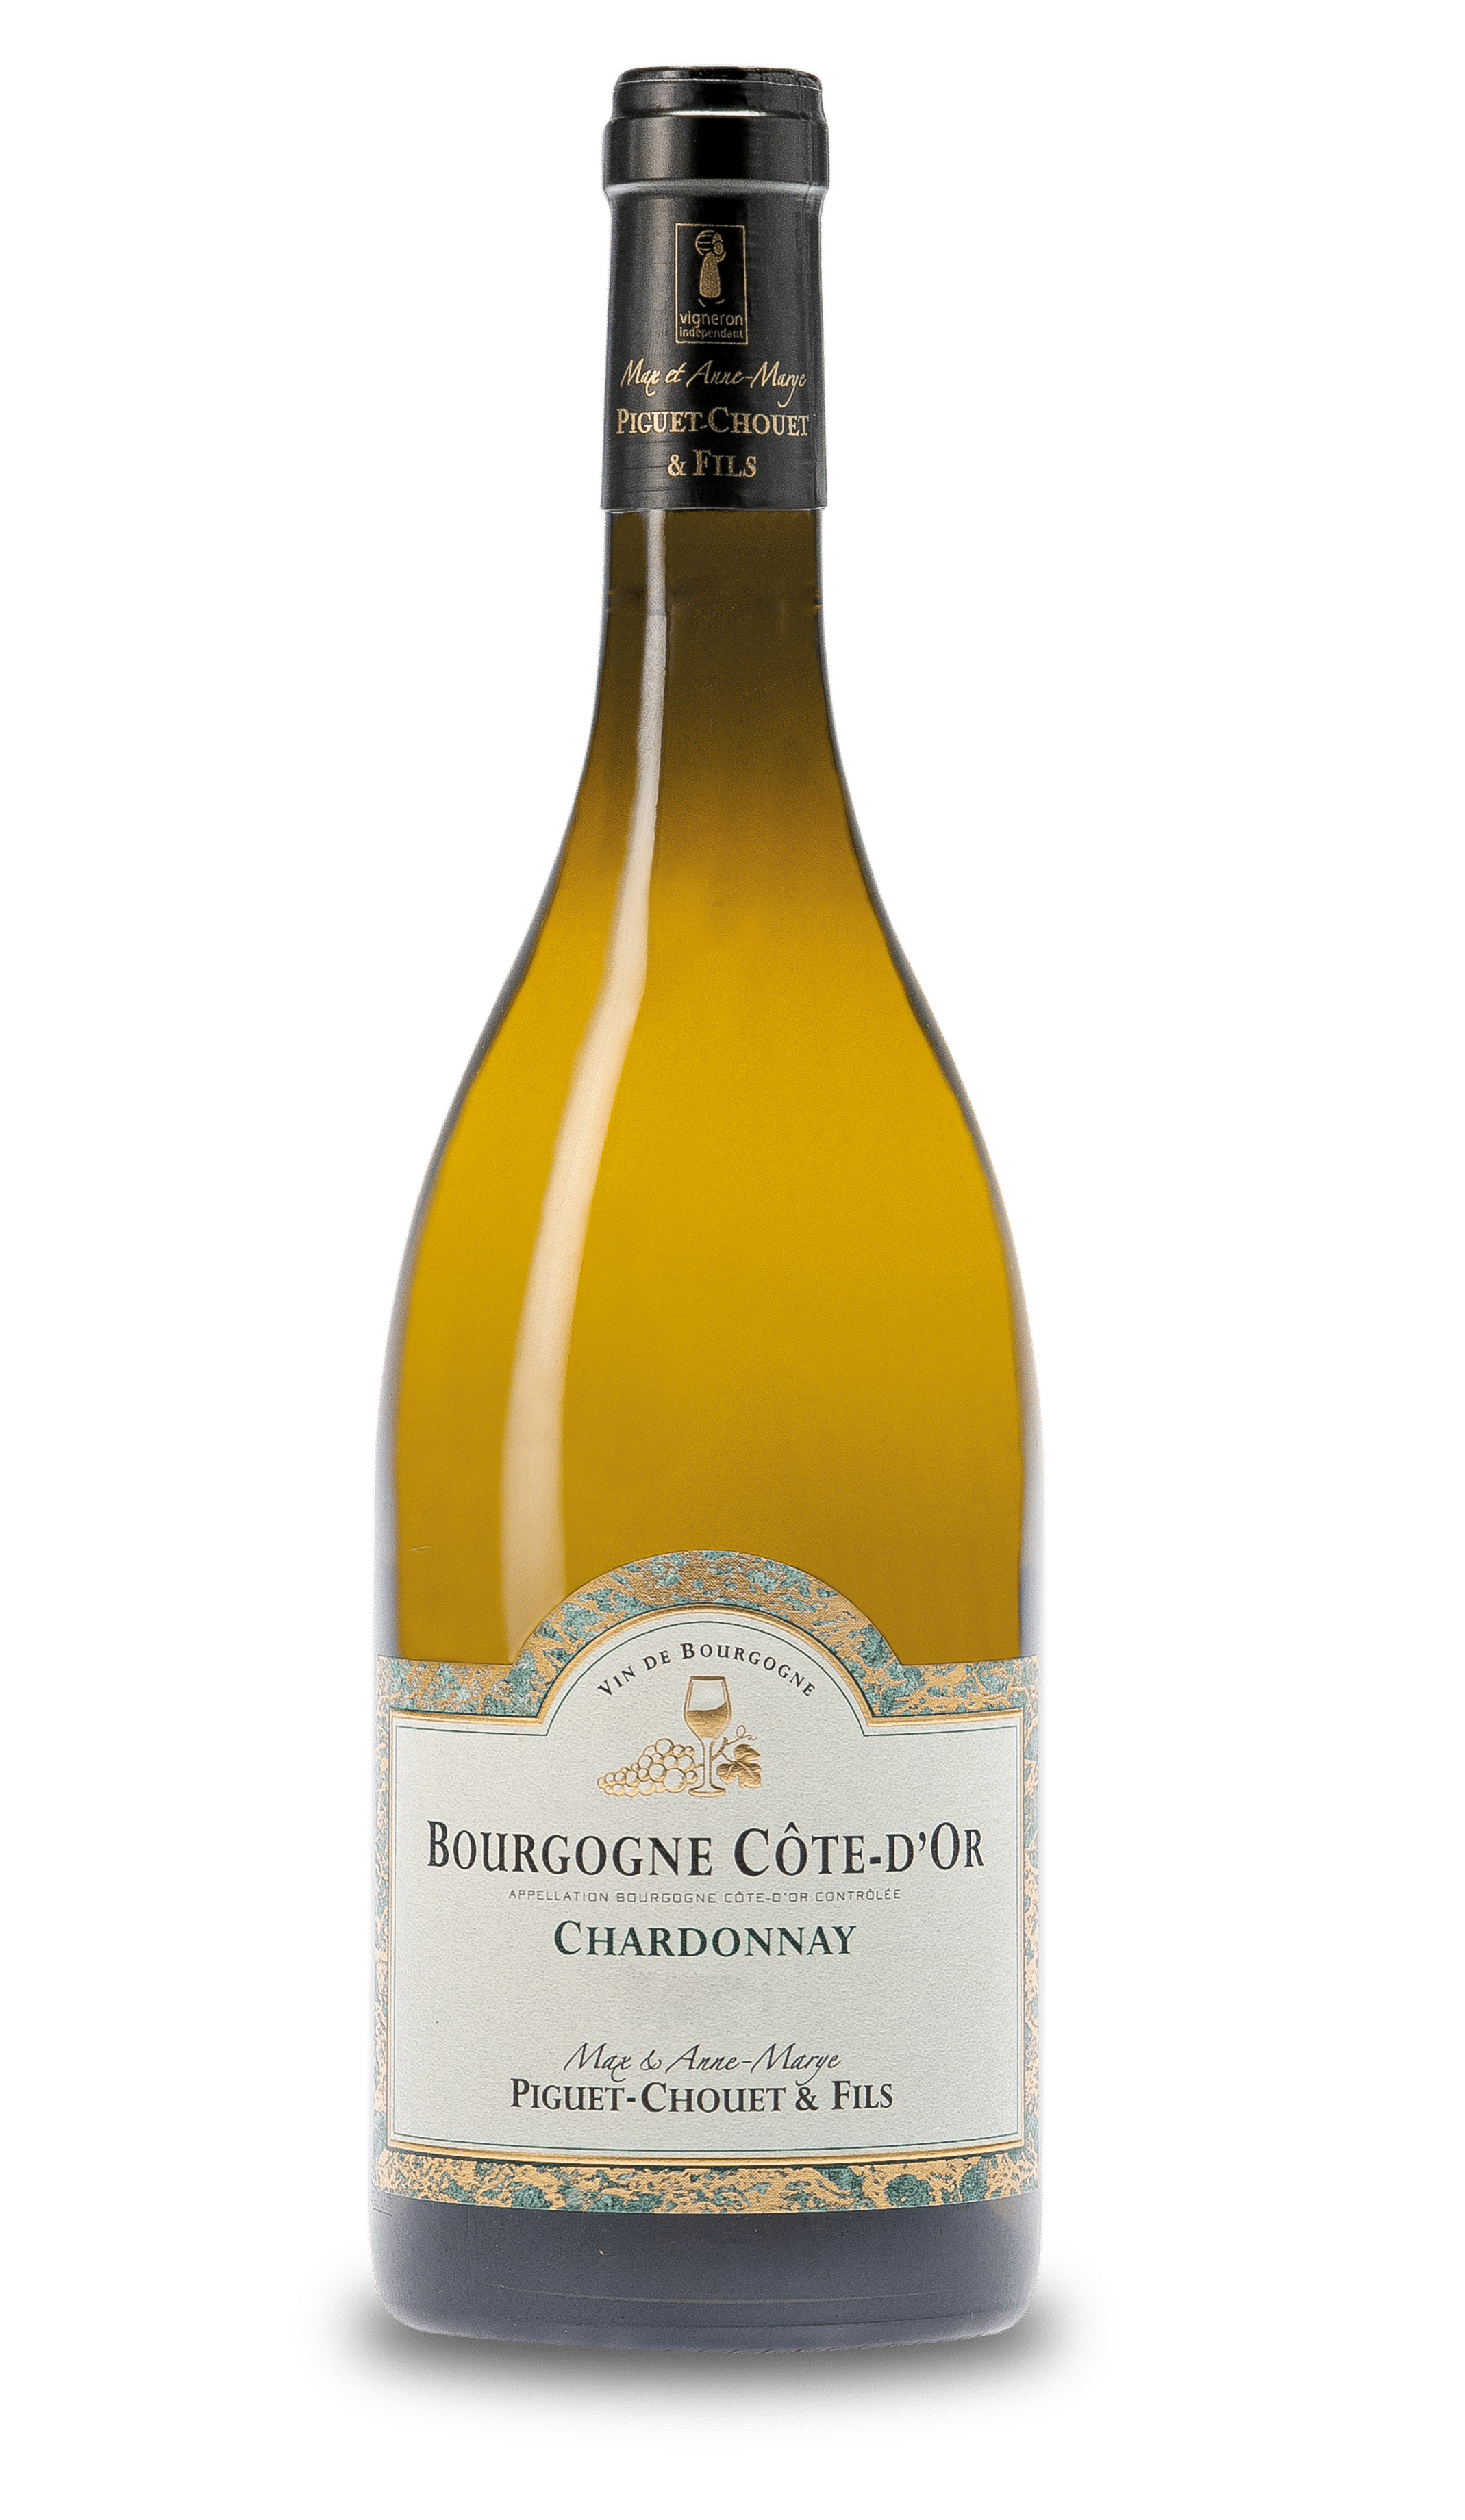 Vin blanc - Piguet Chouet & Fils - Bourgogne Côte-d'Or Chardonnay